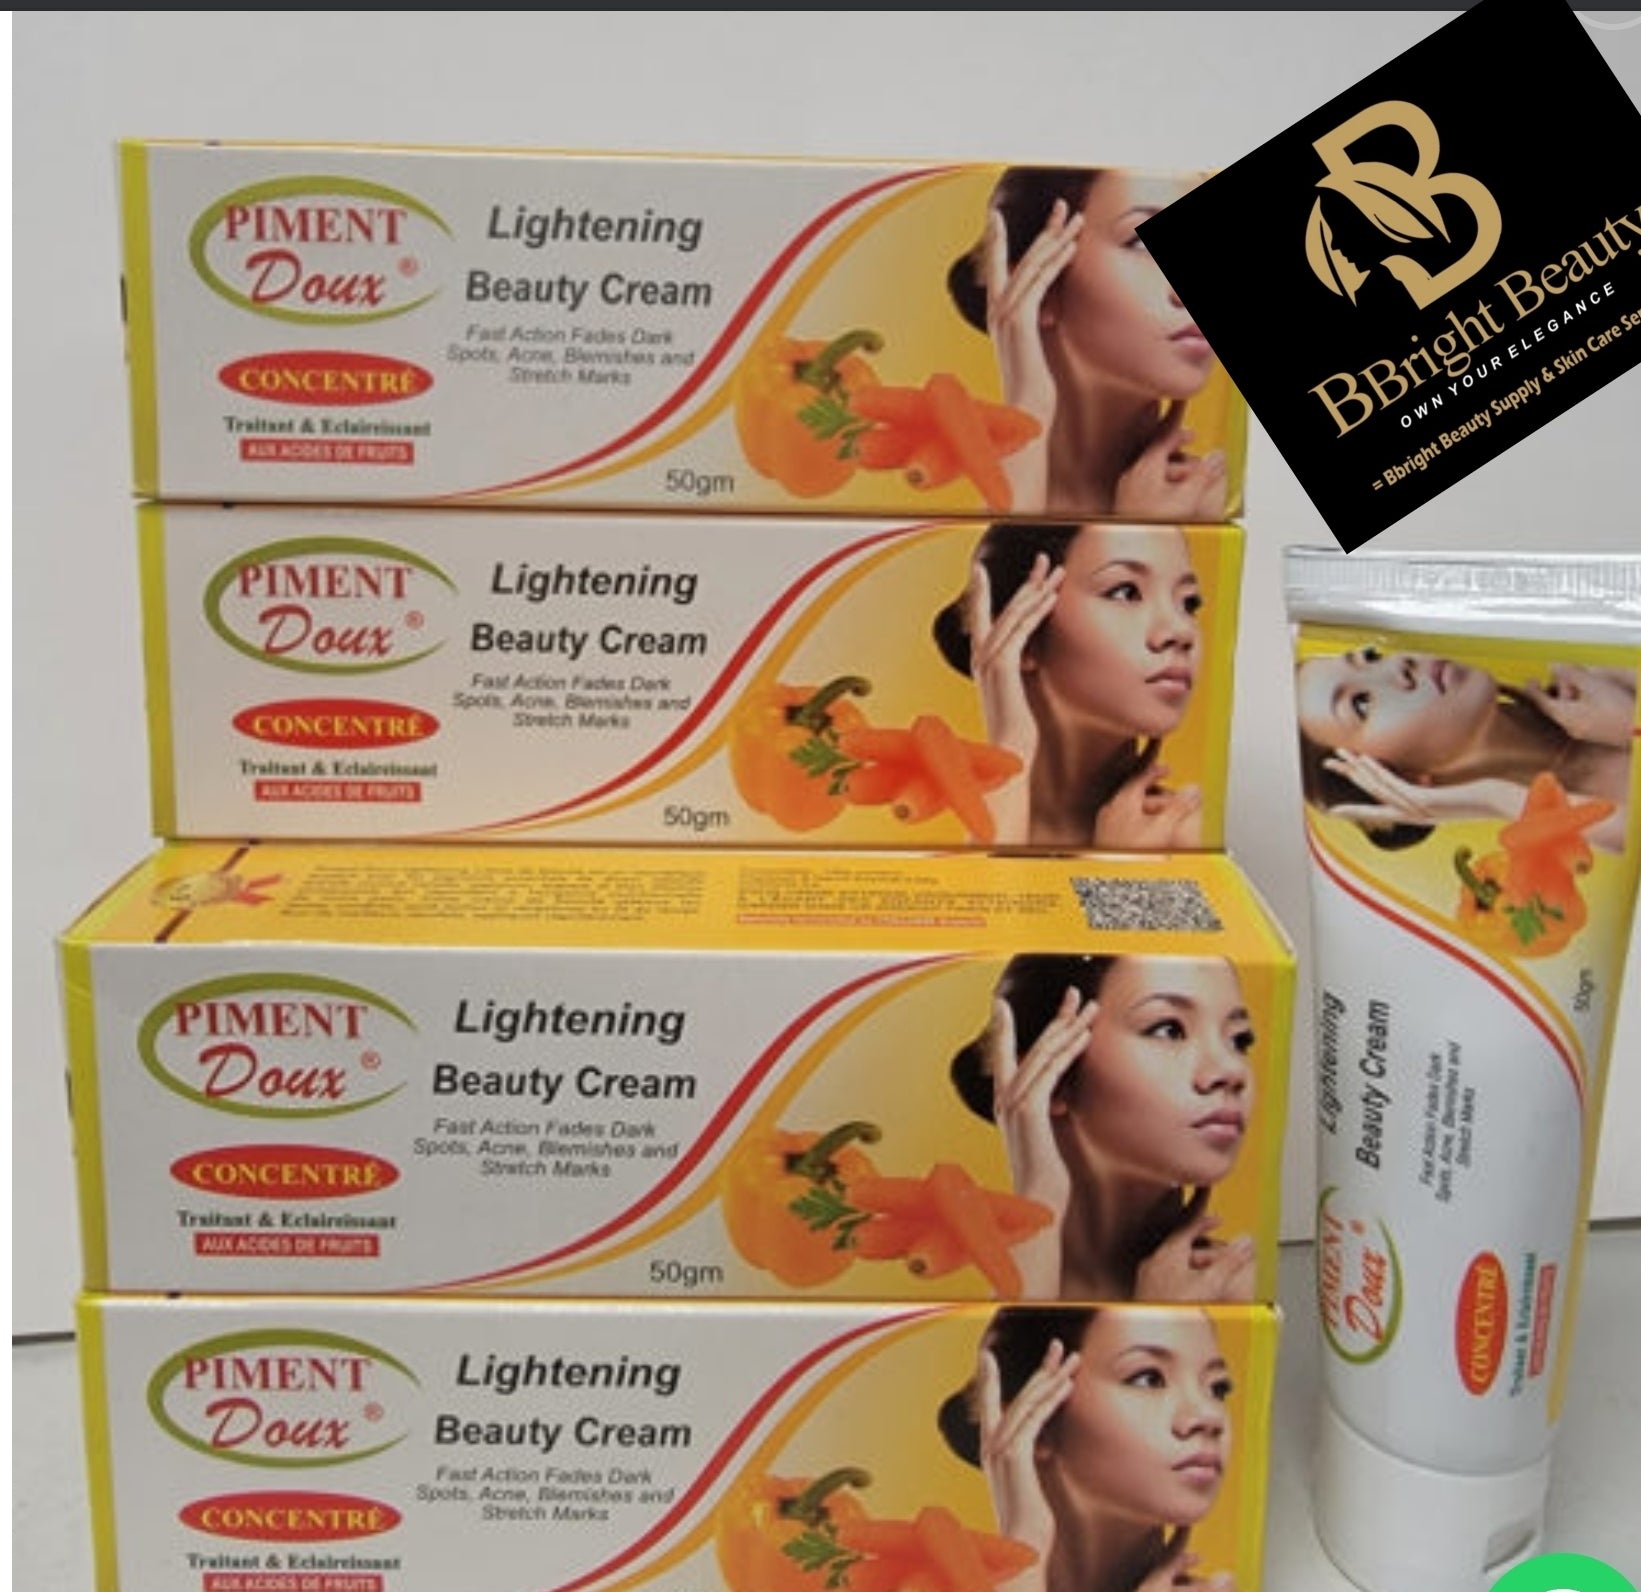 Piment Doux Lightening Beauty Cream 50g